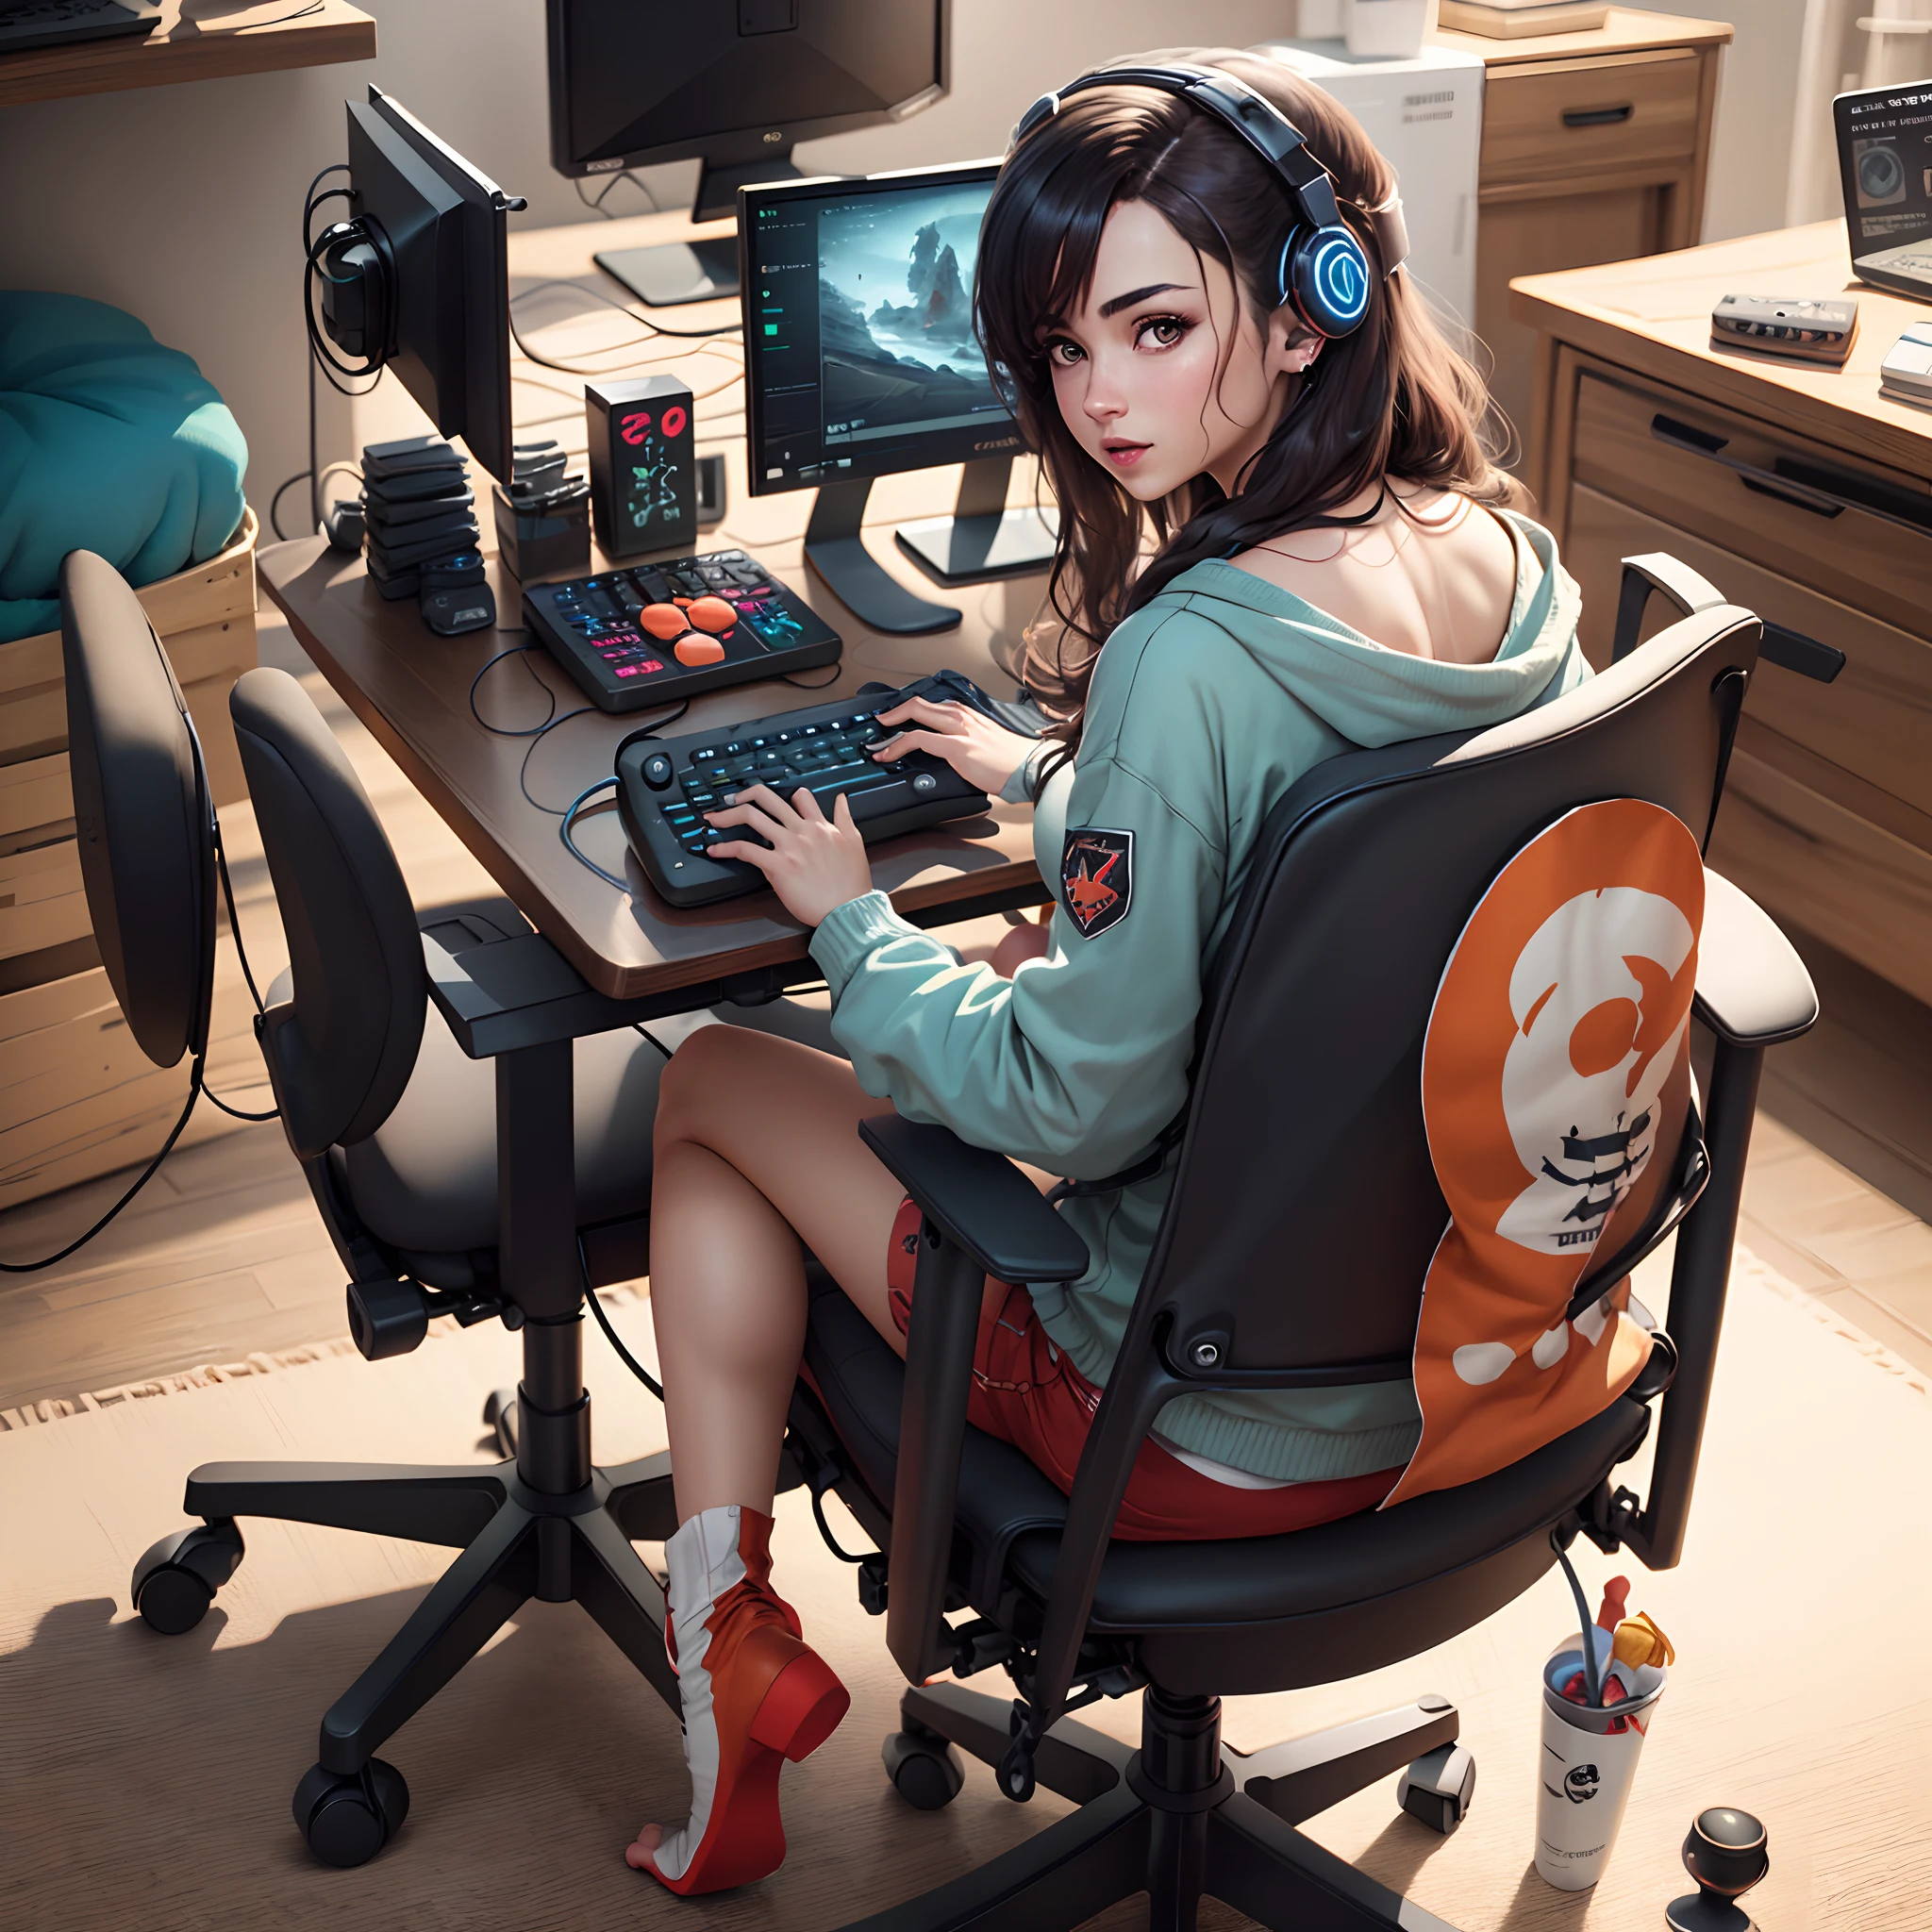 Создайте фотографию игрового процесса Ари, сидящей в ее голом геймерском кресле, в реалистичном стиле.